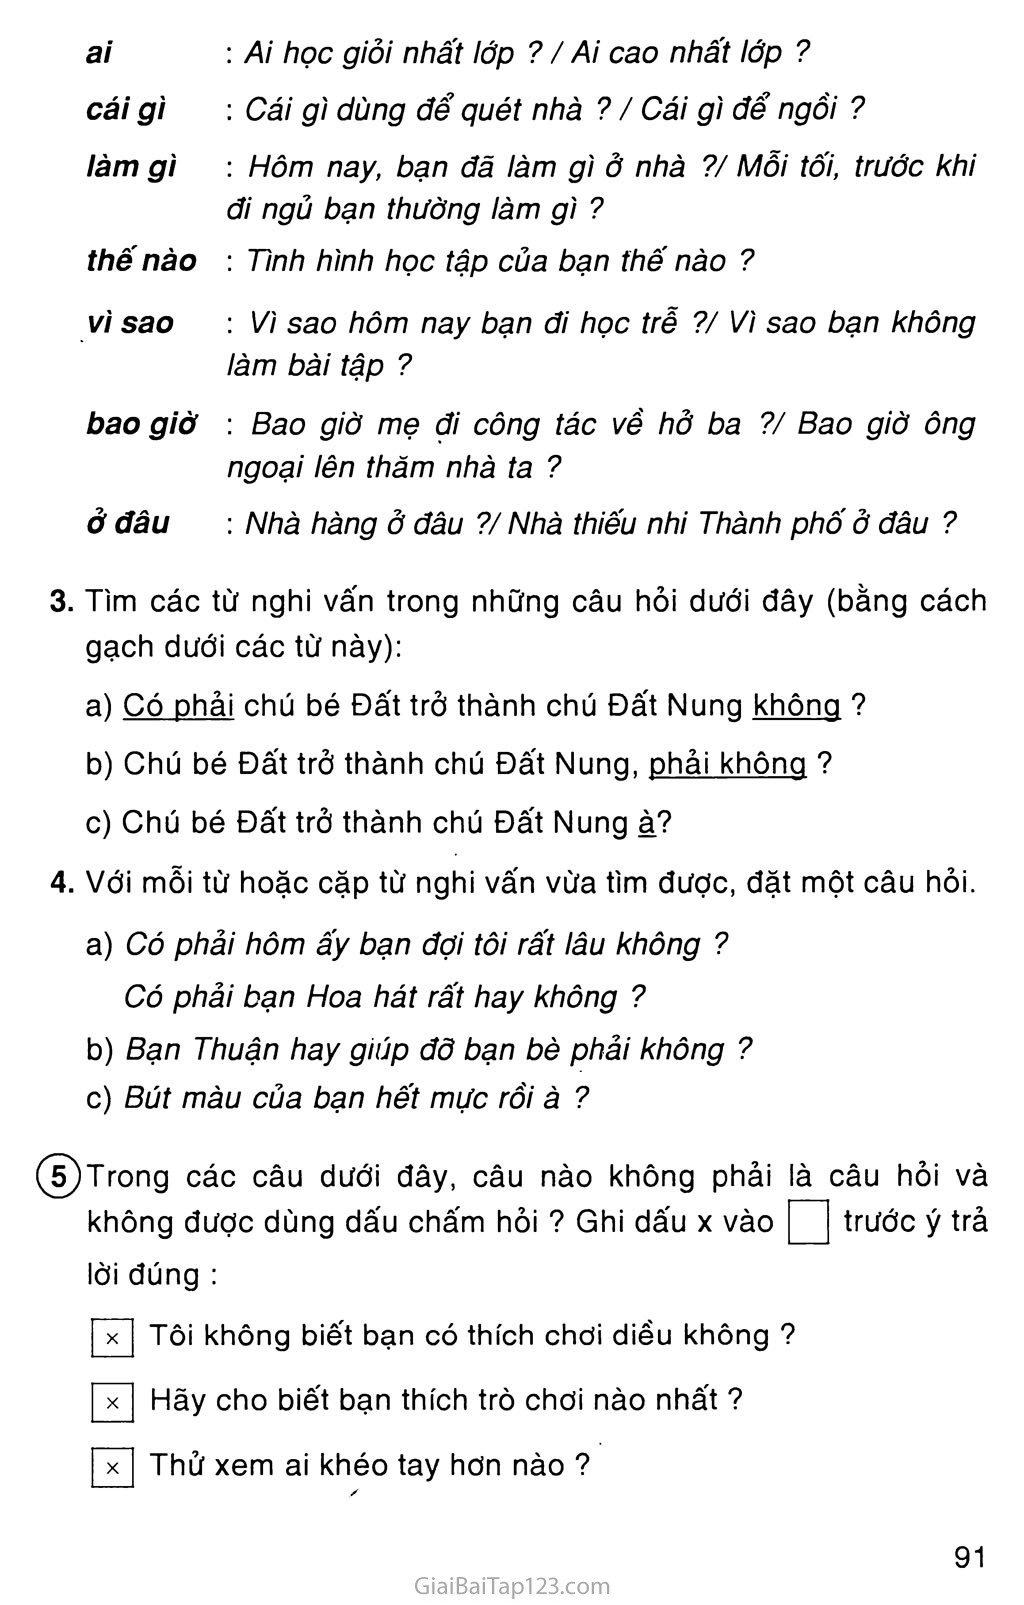 Giải vở bài tập Tiếng Việt lớp 4 tập 1 Tuần 14